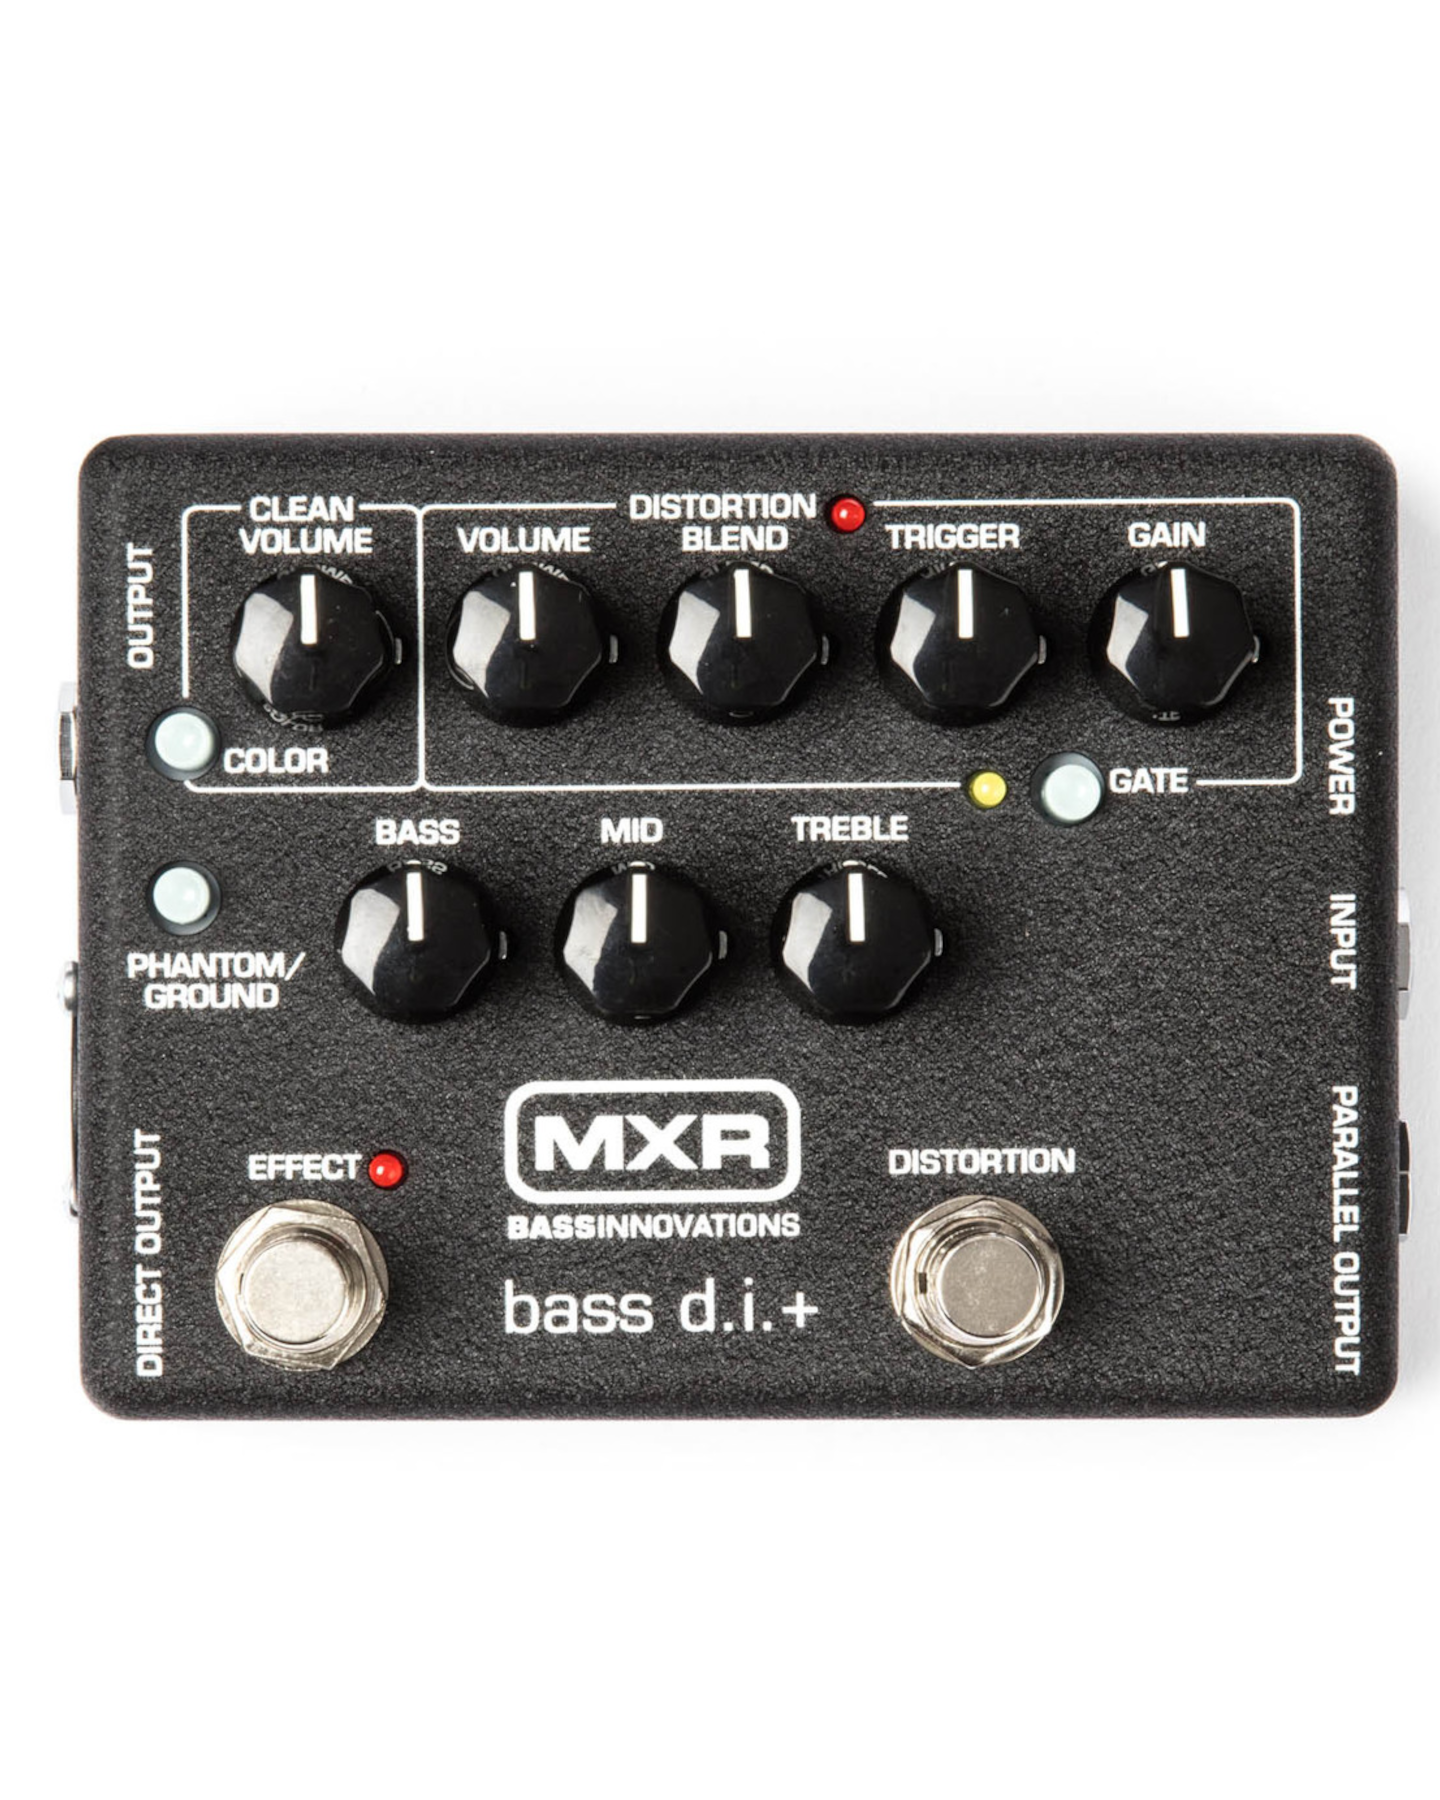 M80 Bass DI+